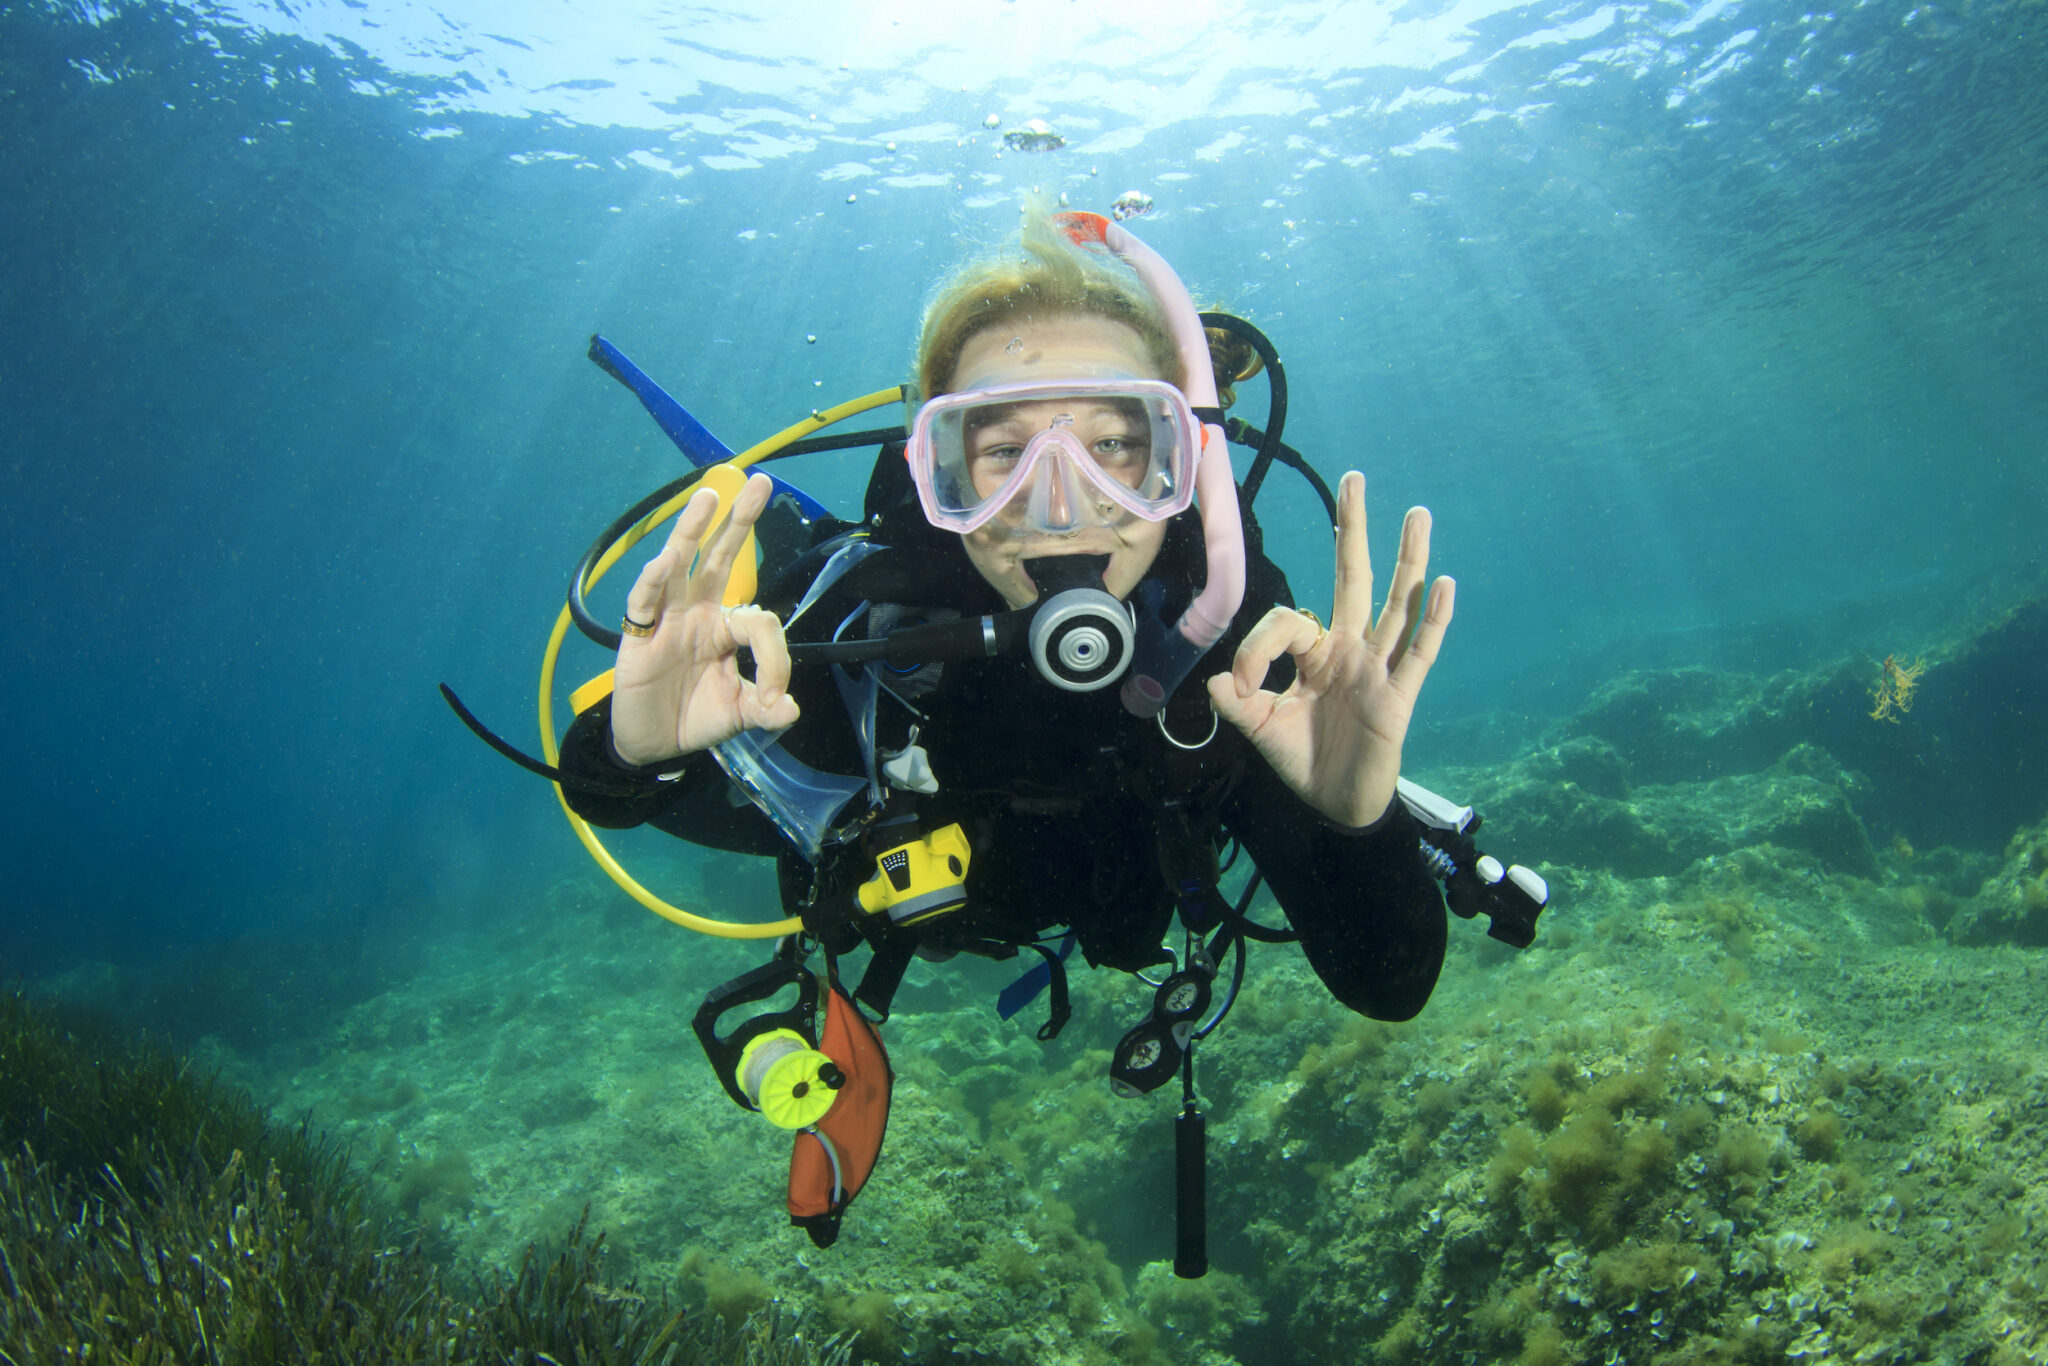 A teenage diver signals okay